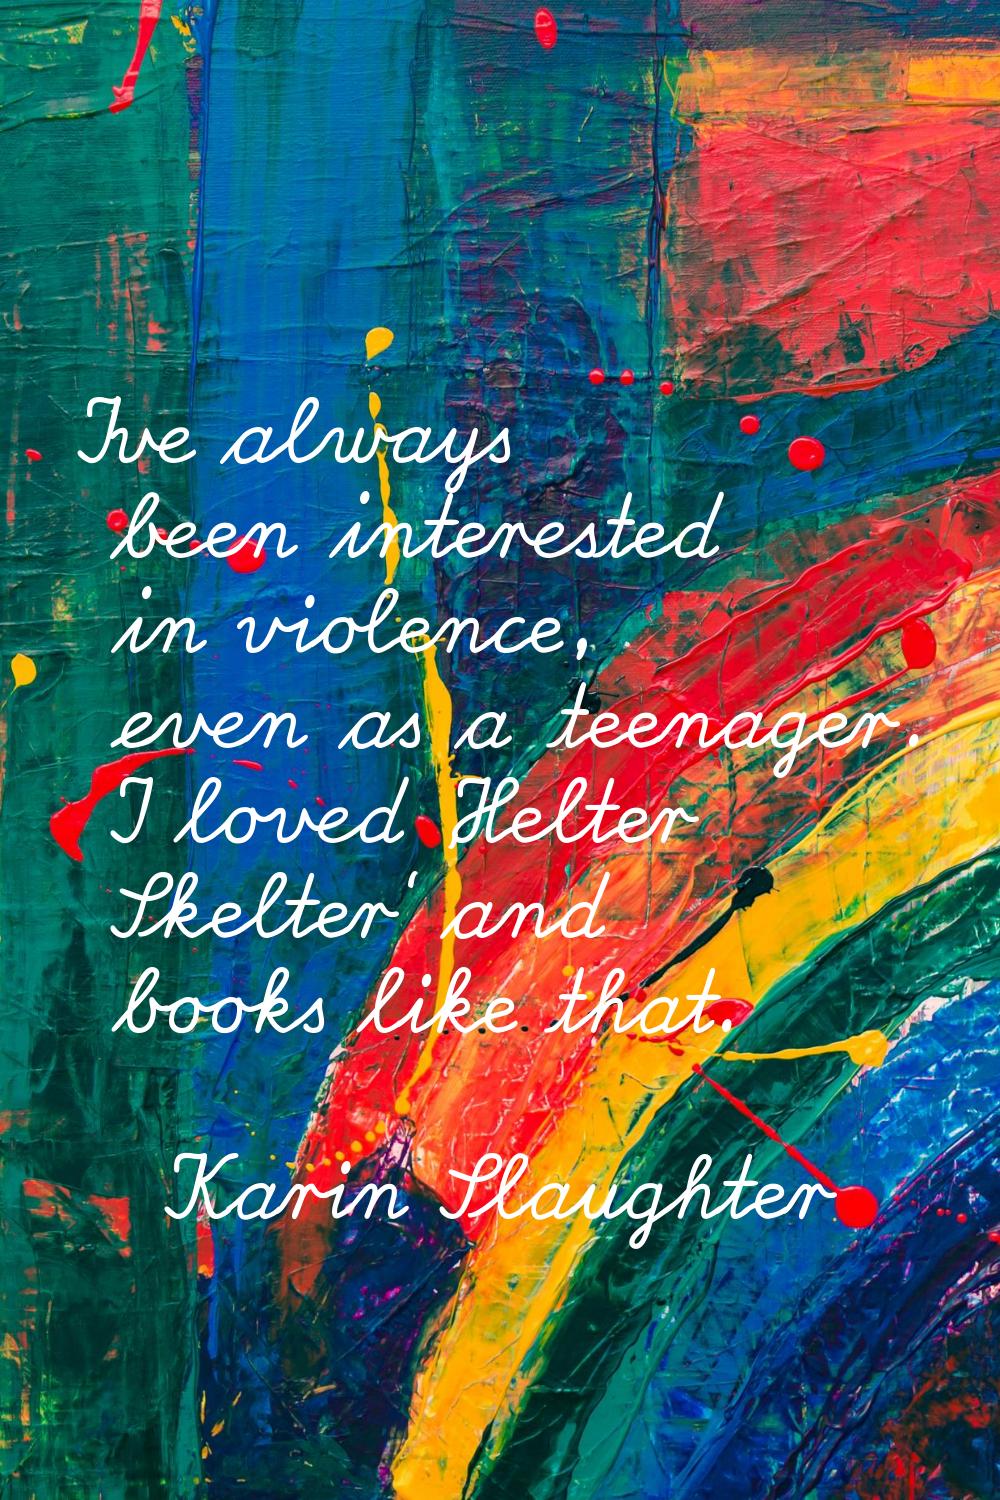 I've always been interested in violence, even as a teenager. I loved 'Helter Skelter' and books lik